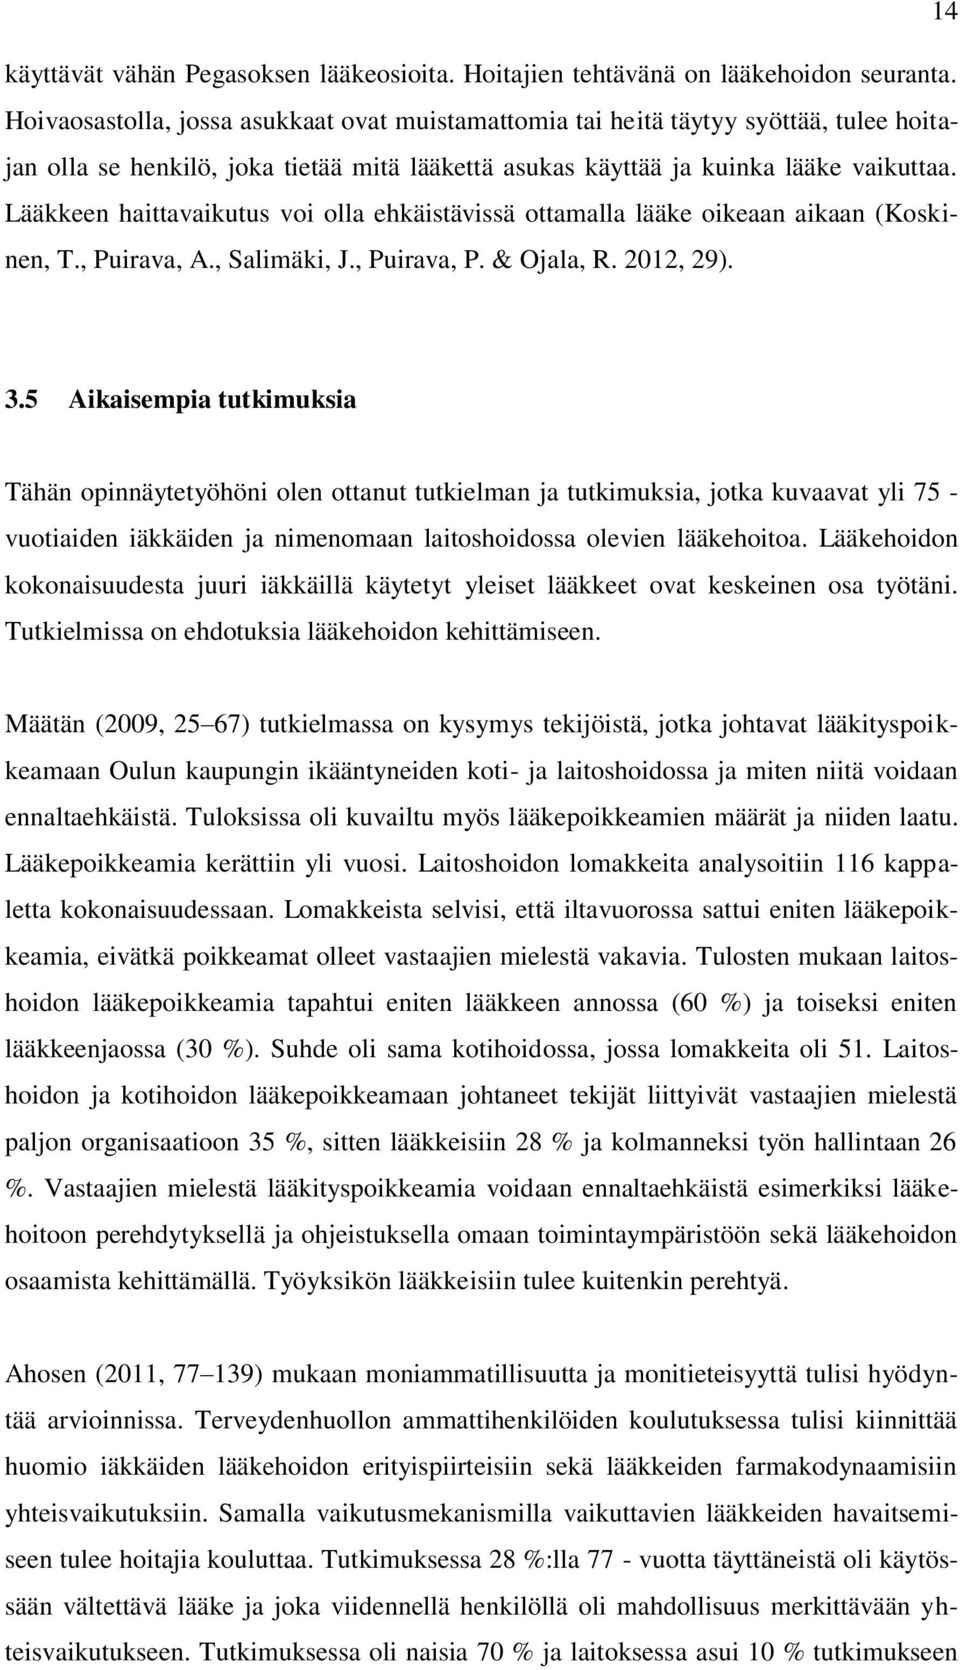 Lääkkeen haittavaikutus voi olla ehkäistävissä ottamalla lääke oikeaan aikaan (Koskinen, T., Puirava, A., Salimäki, J., Puirava, P. & Ojala, R. 2012, 29). 3.